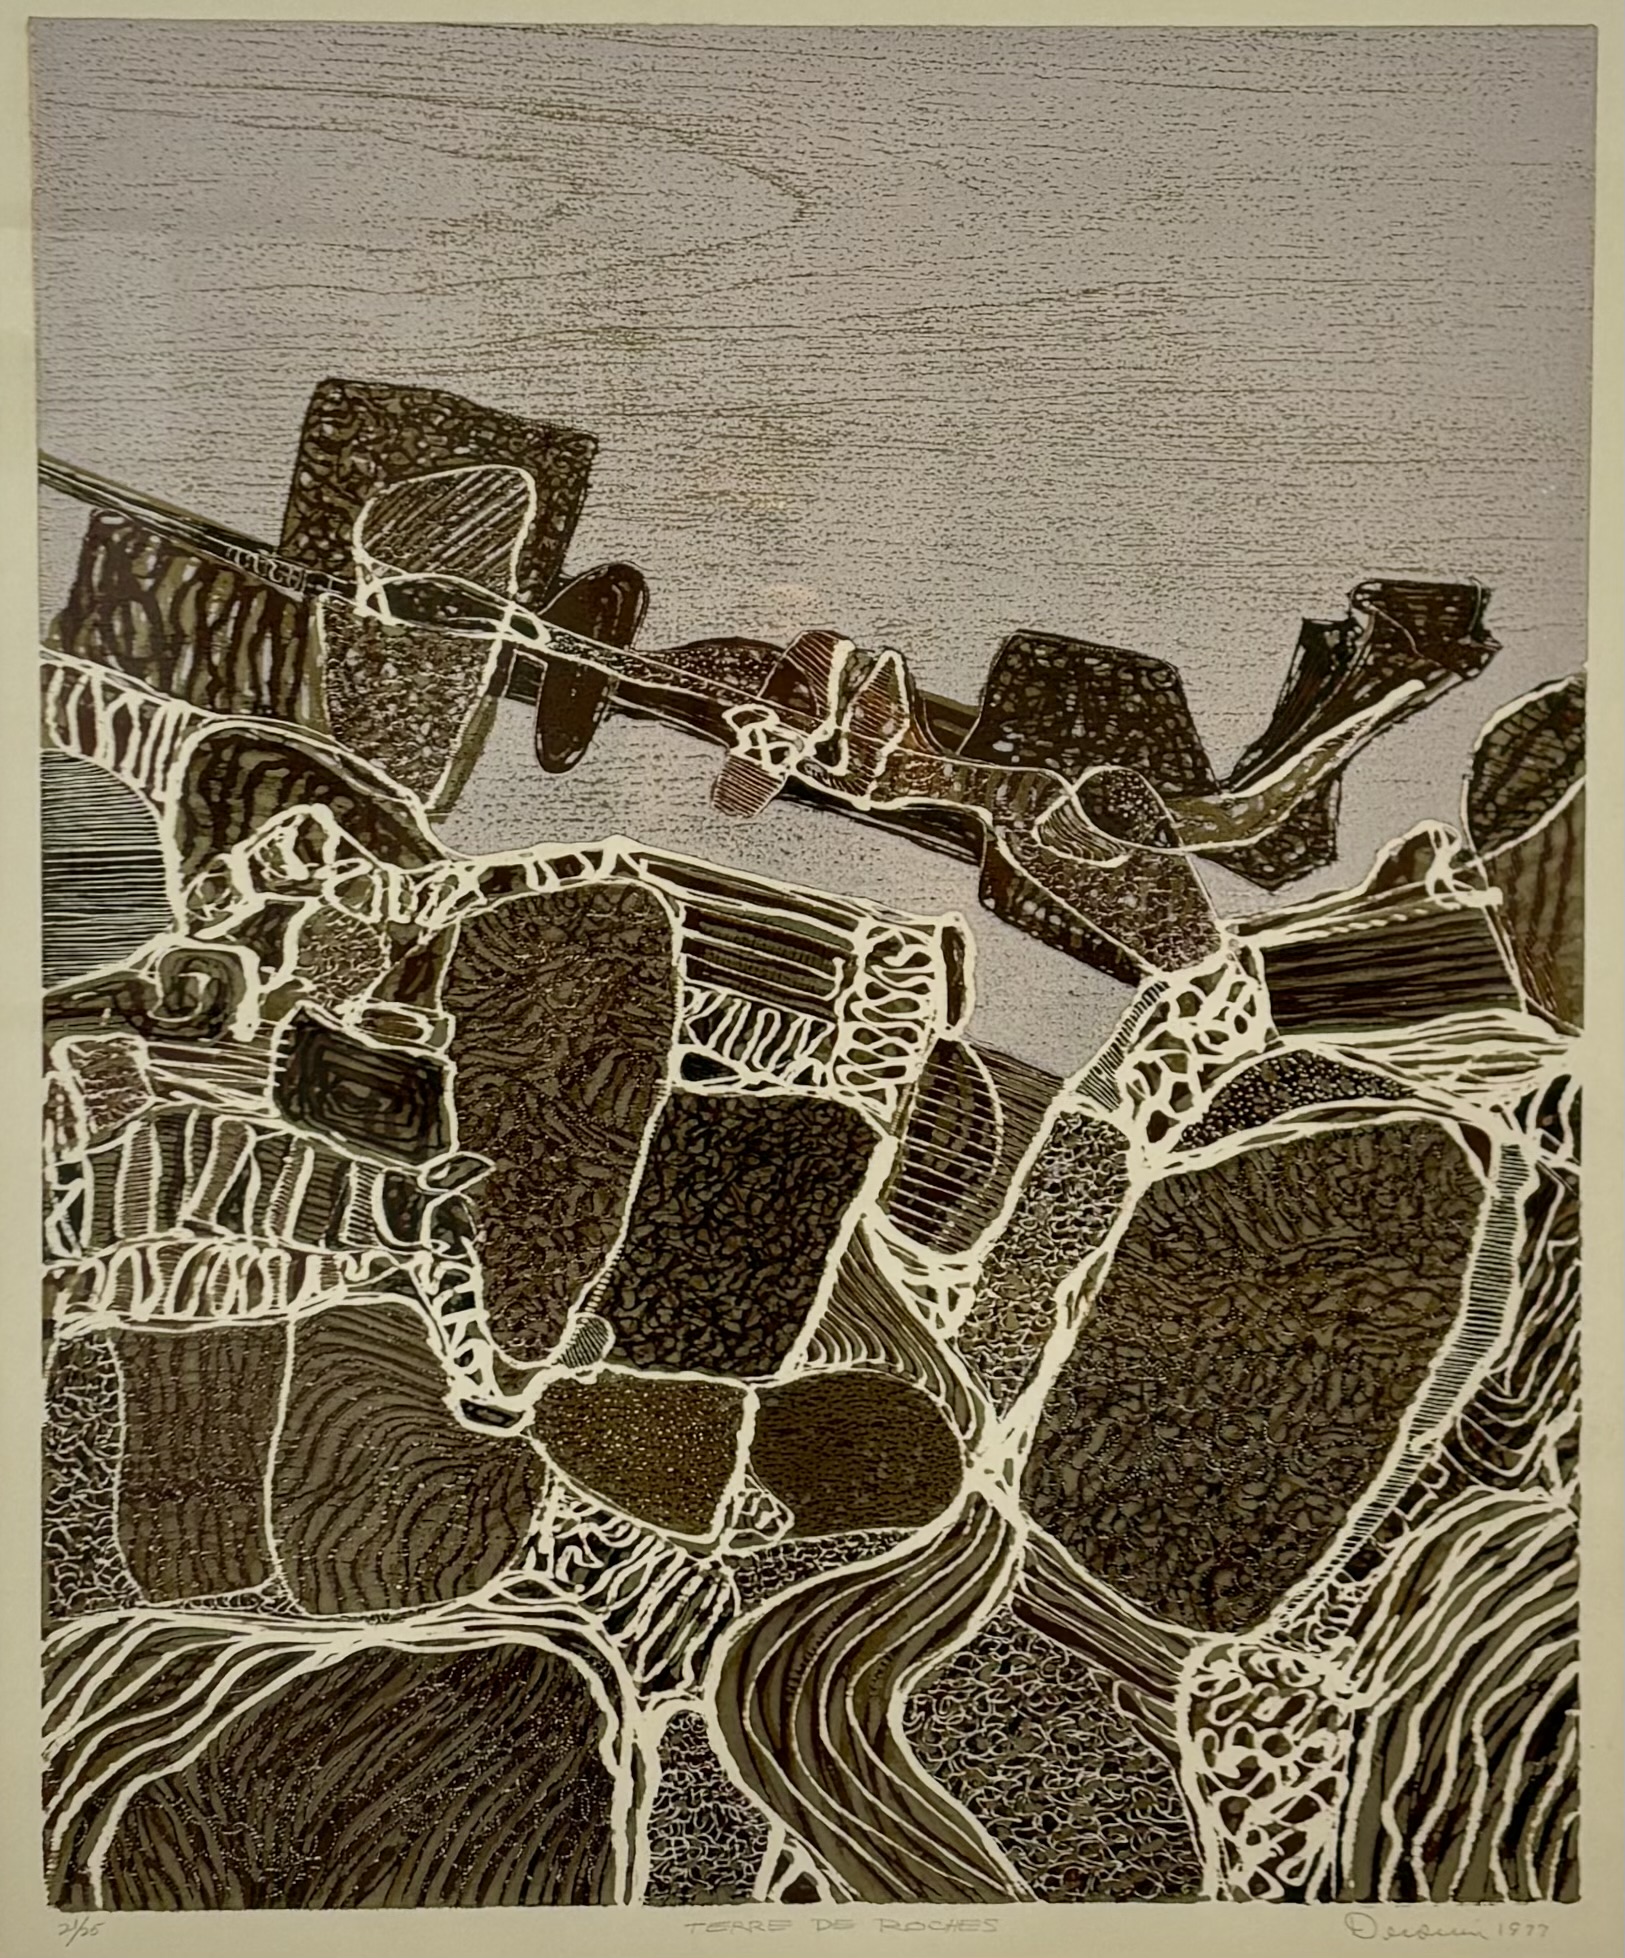 Terre de roches Gravure sur bois, 21/25 26 x 22 po 1977